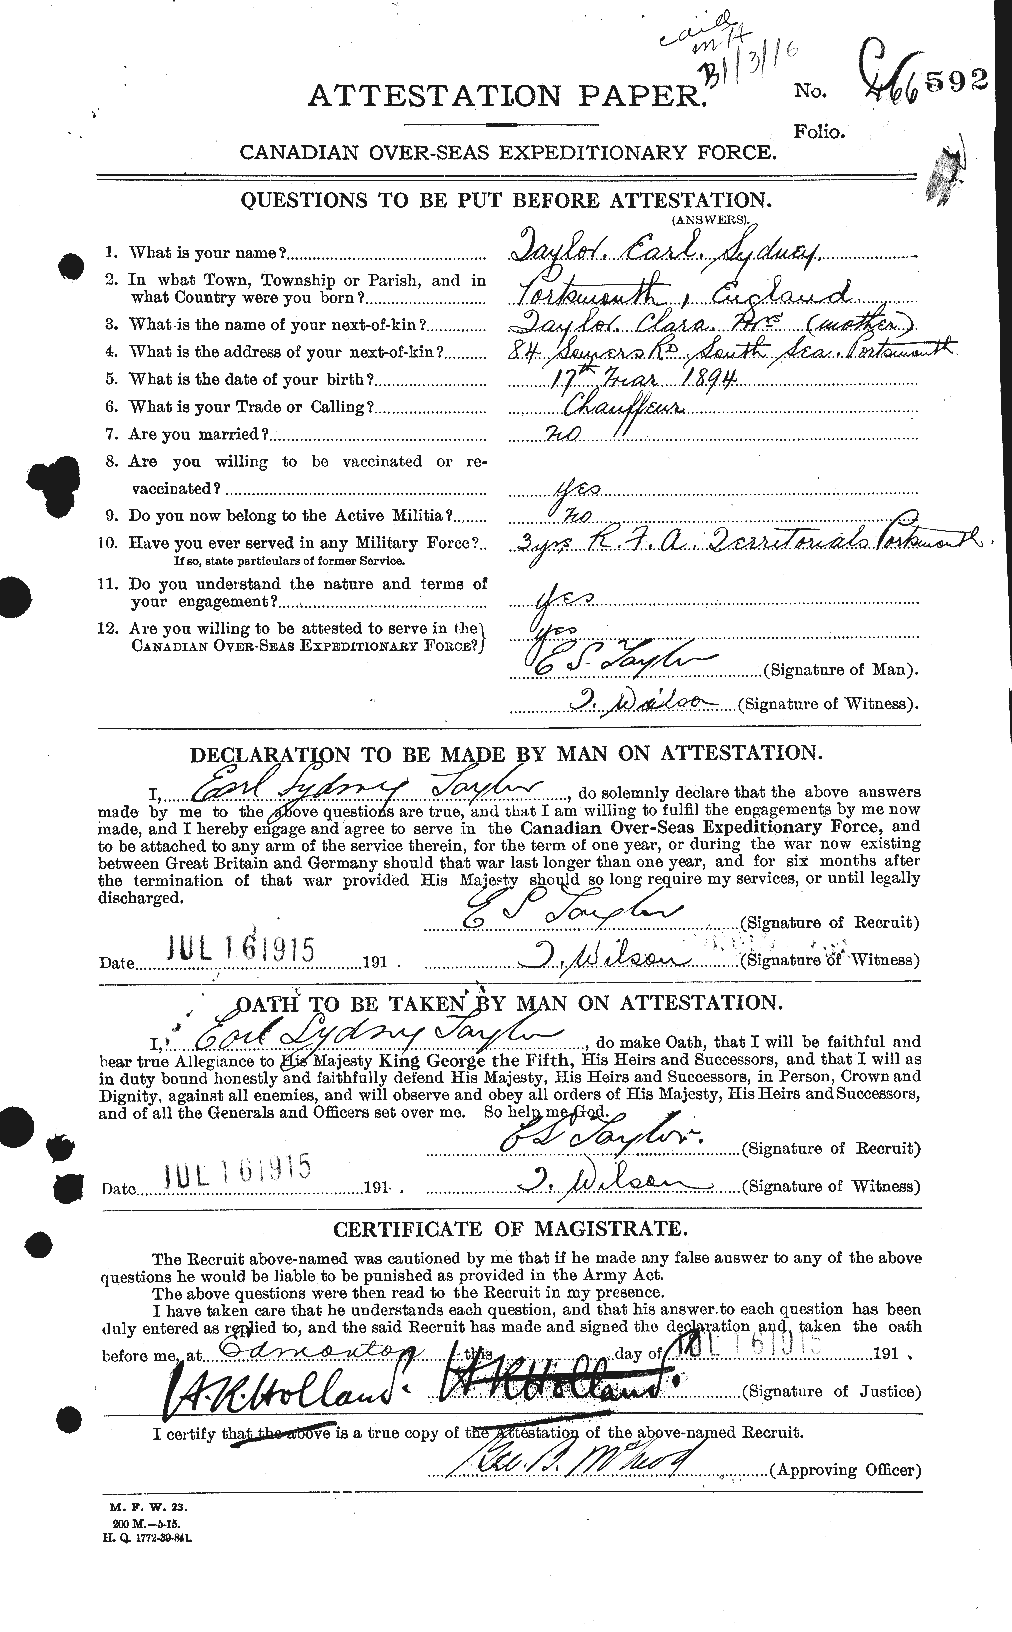 Dossiers du Personnel de la Première Guerre mondiale - CEC 627267a